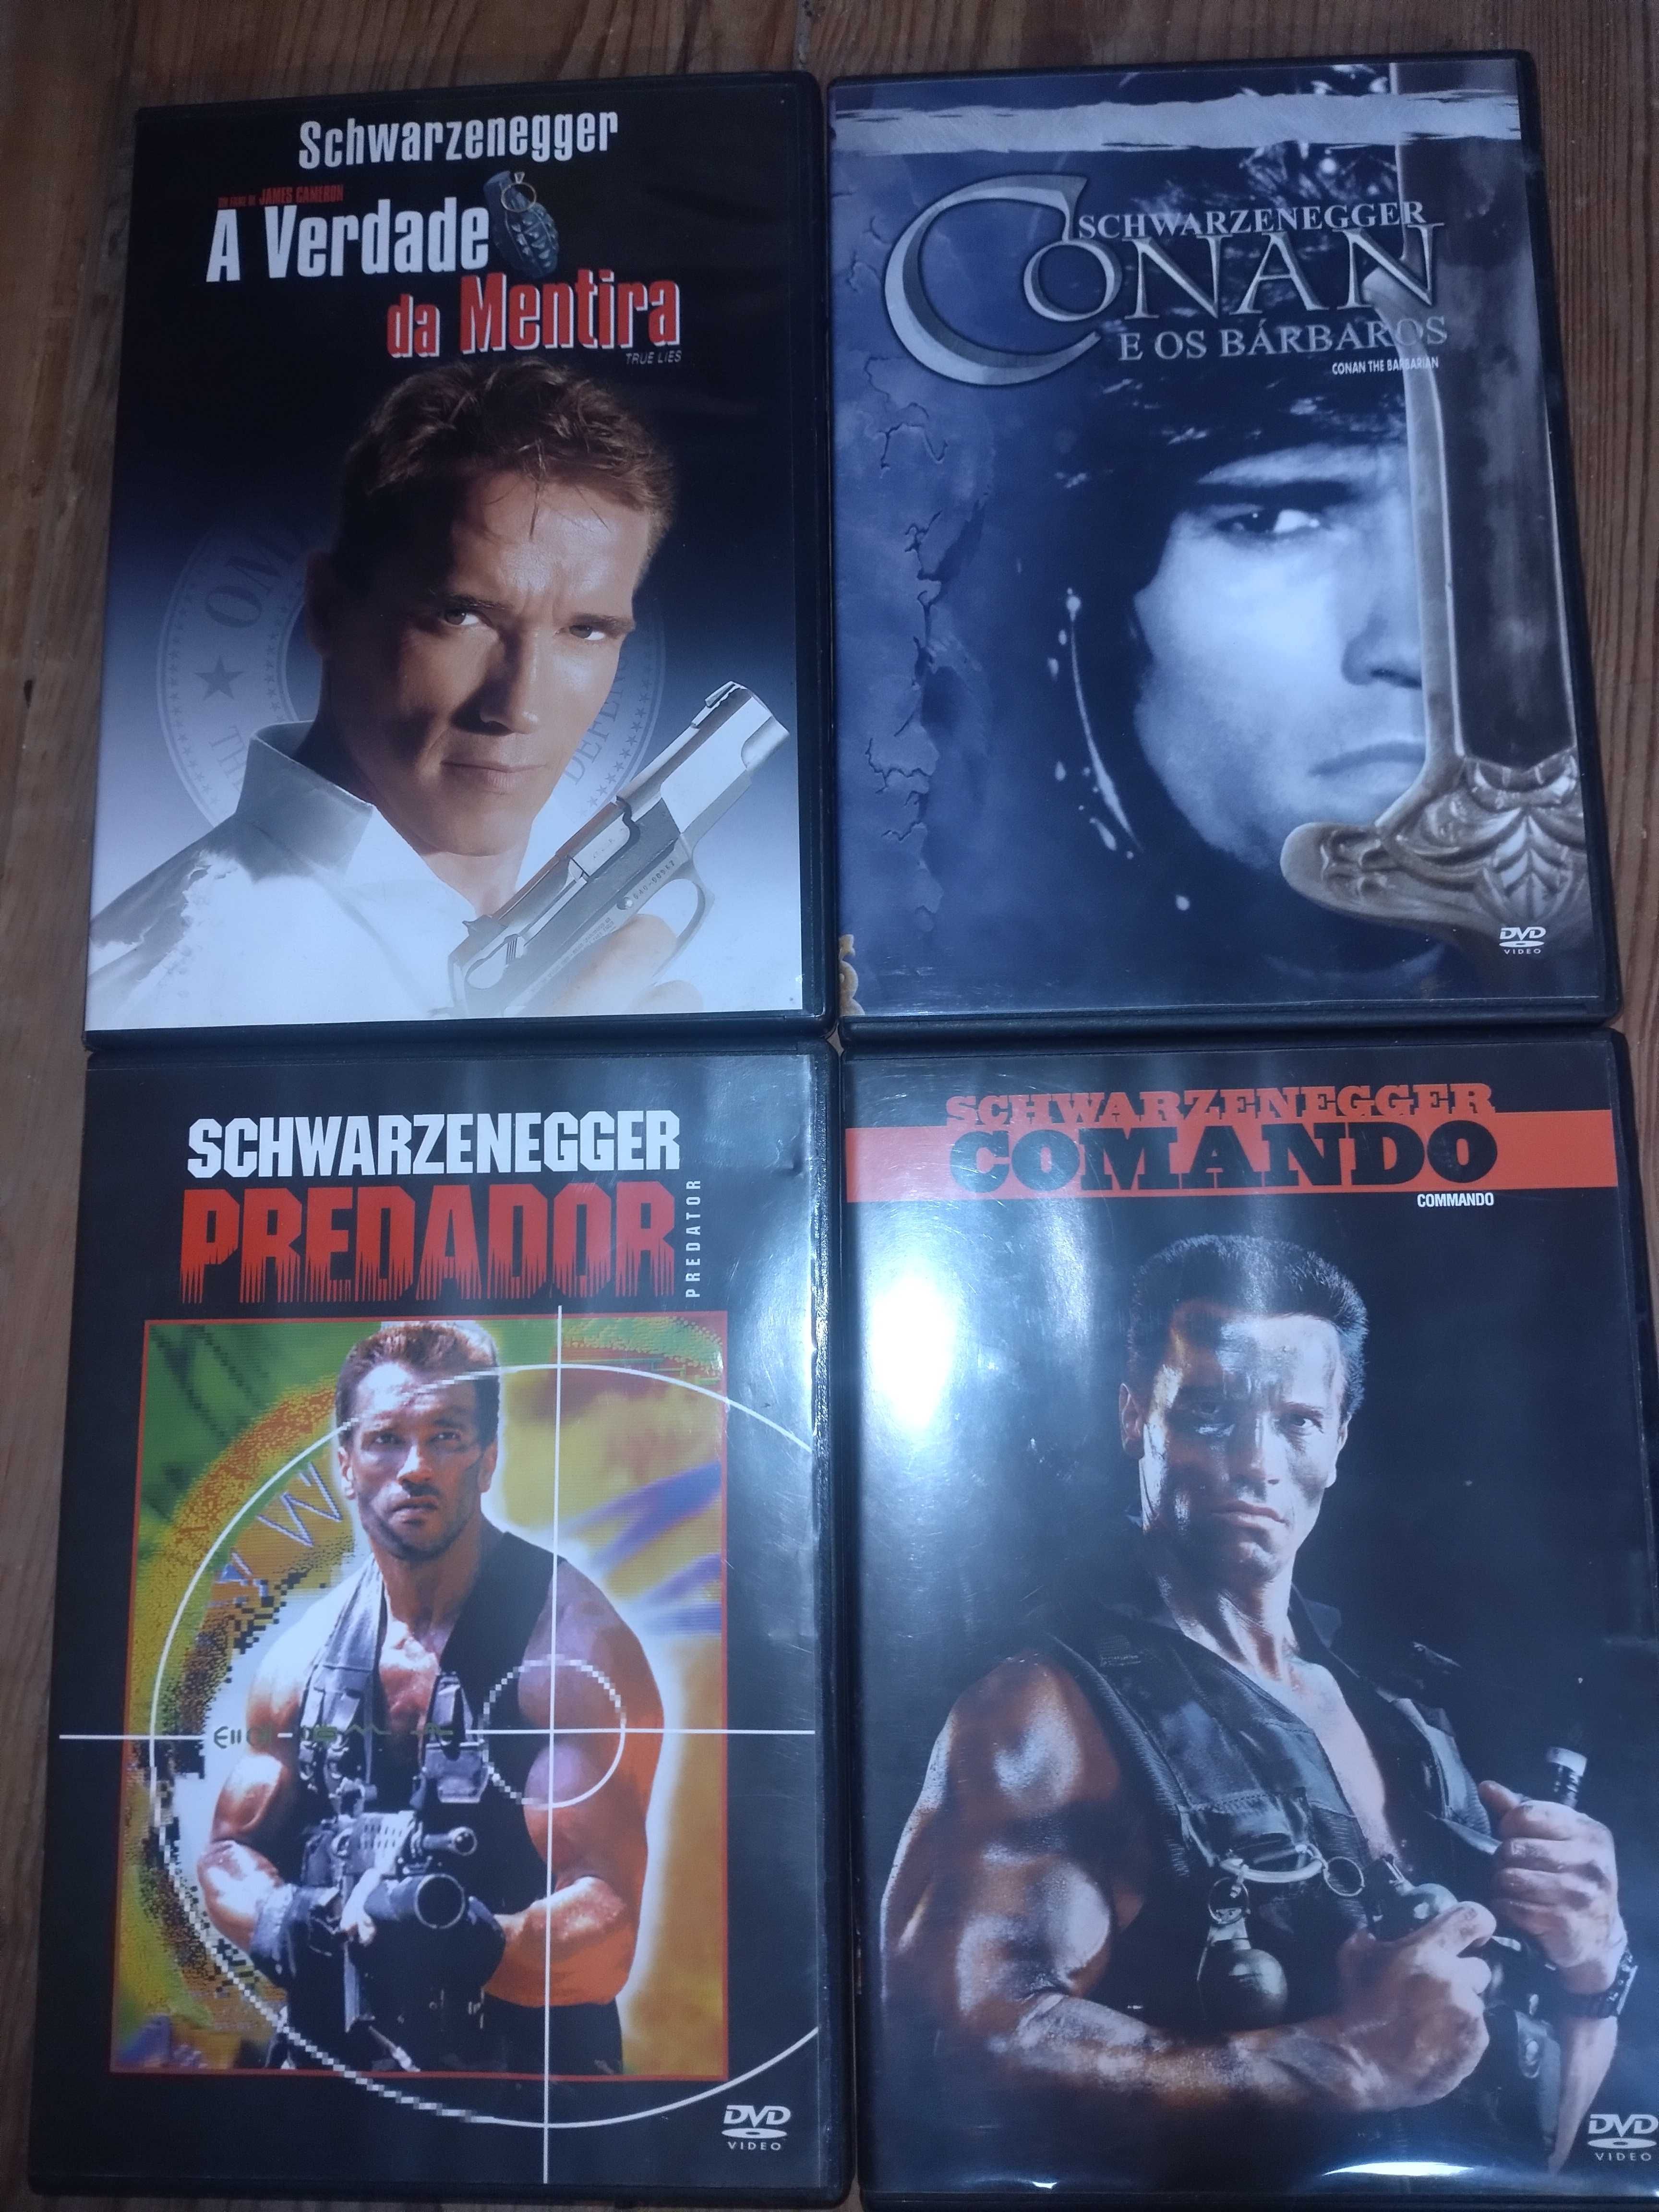 DVD's vários filmes